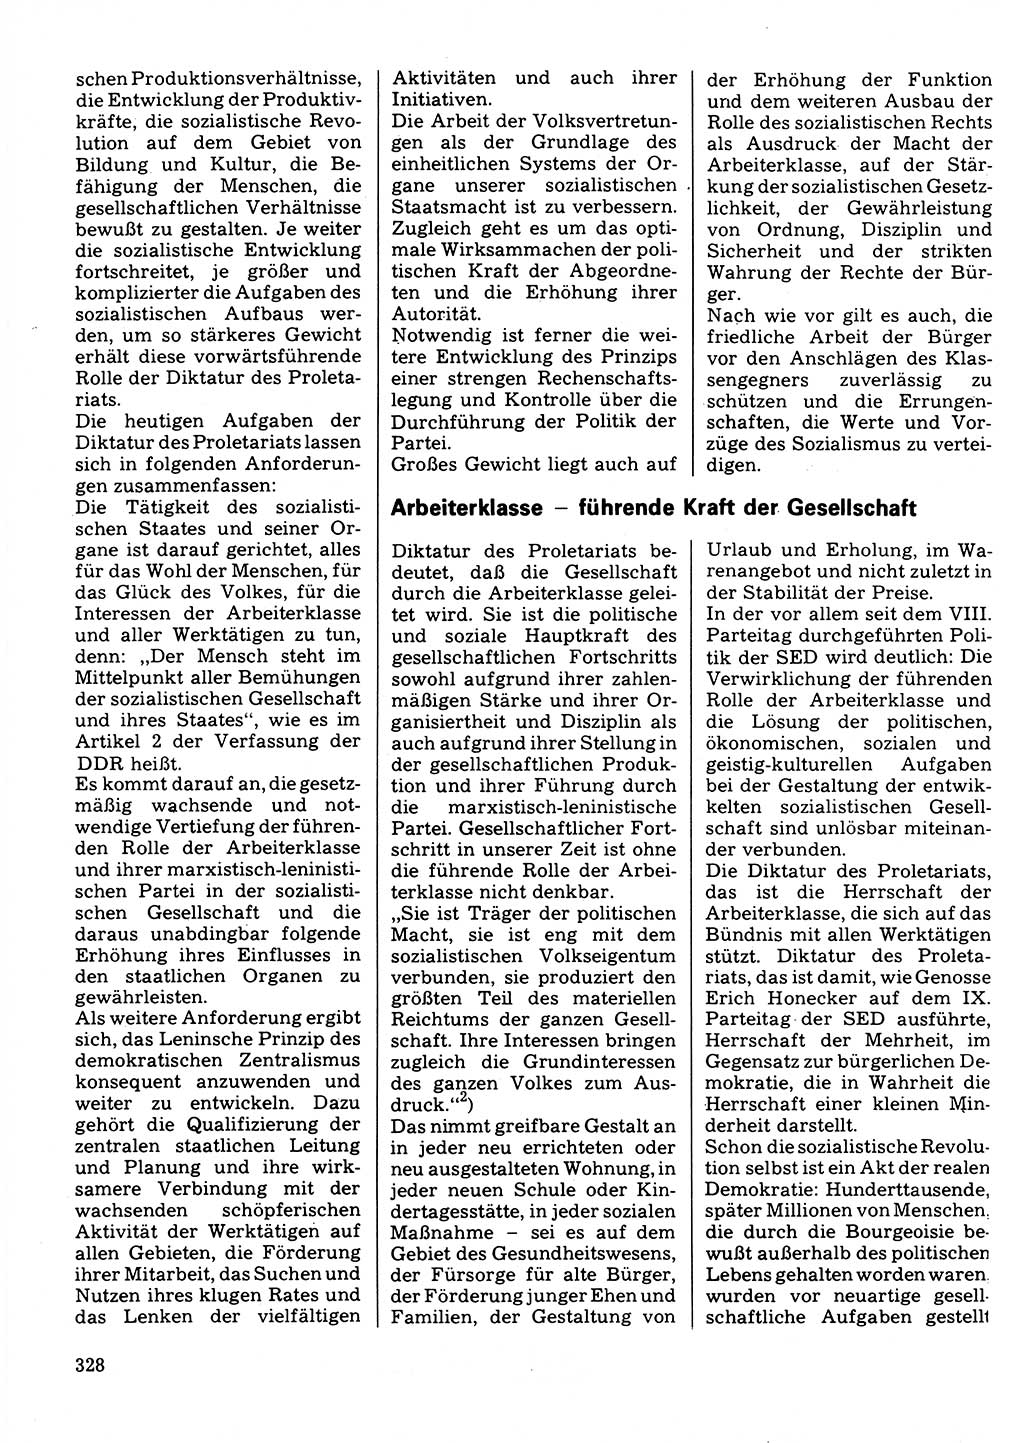 Neuer Weg (NW), Organ des Zentralkomitees (ZK) der SED (Sozialistische Einheitspartei Deutschlands) für Fragen des Parteilebens, 32. Jahrgang [Deutsche Demokratische Republik (DDR)] 1977, Seite 328 (NW ZK SED DDR 1977, S. 328)